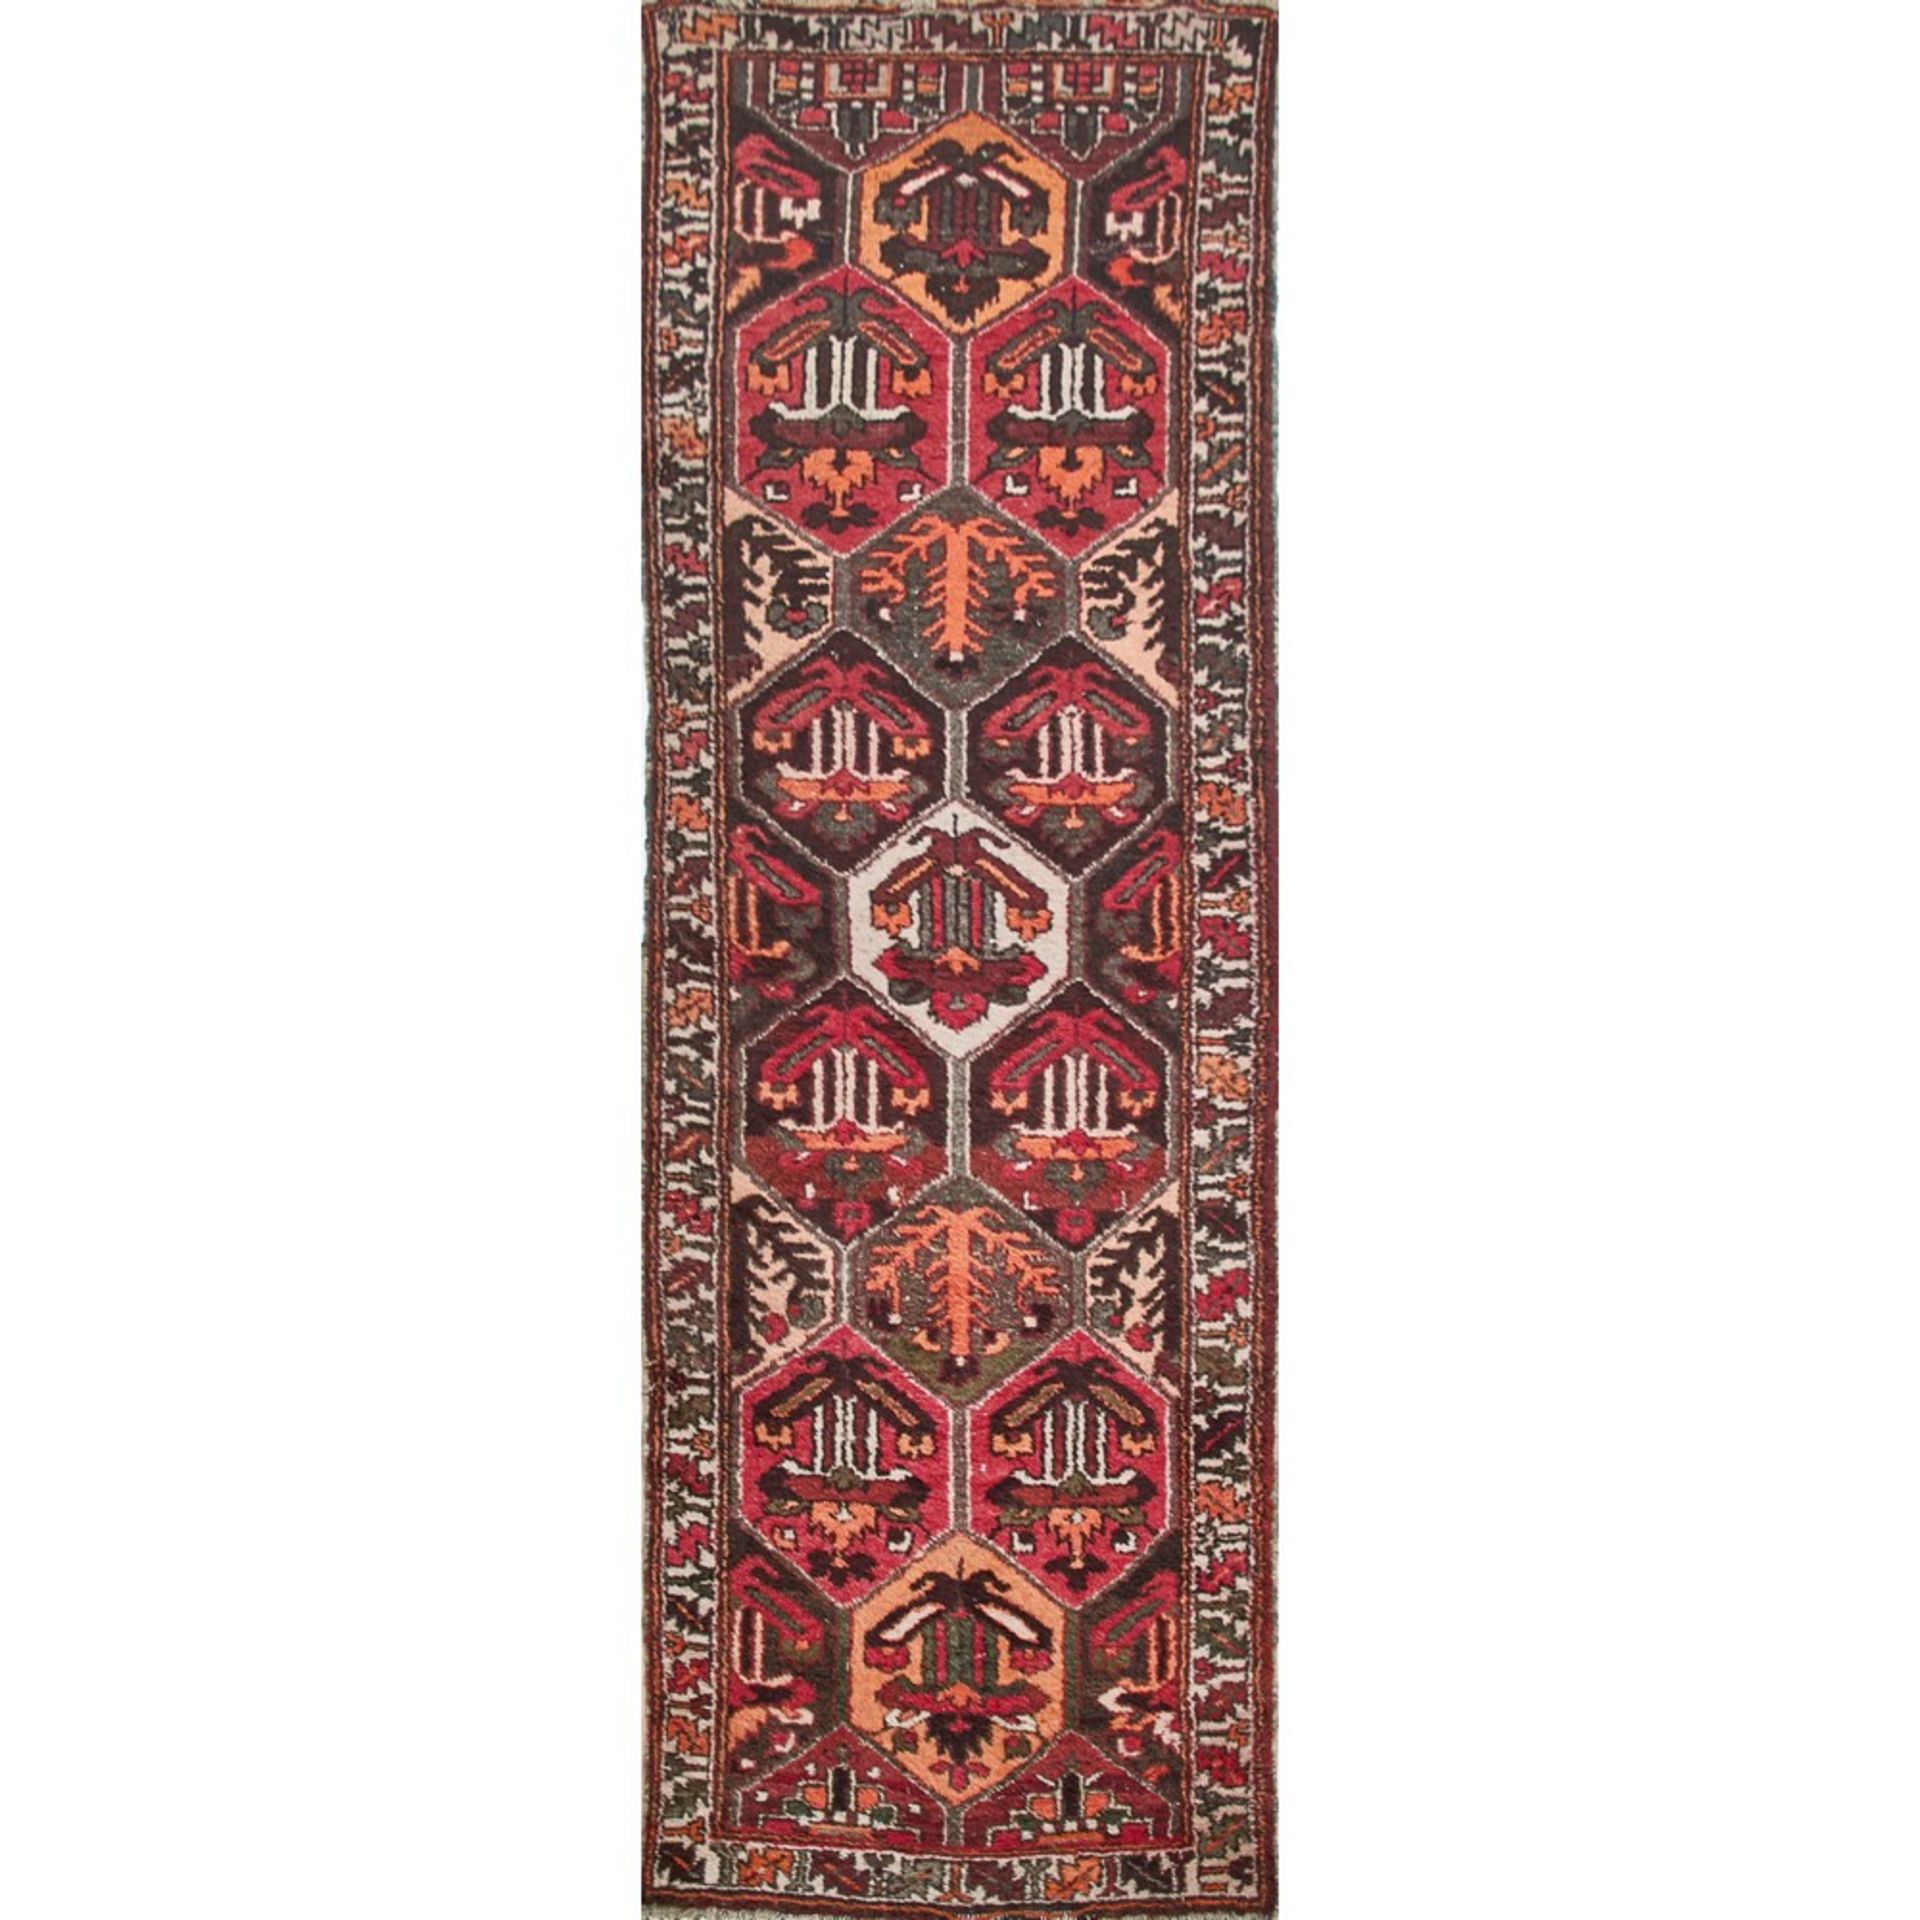 TAPPETO BAKTIARY trama ed ordito in cotone, vello in lana. Persia XX secolo - cm 292 x 101